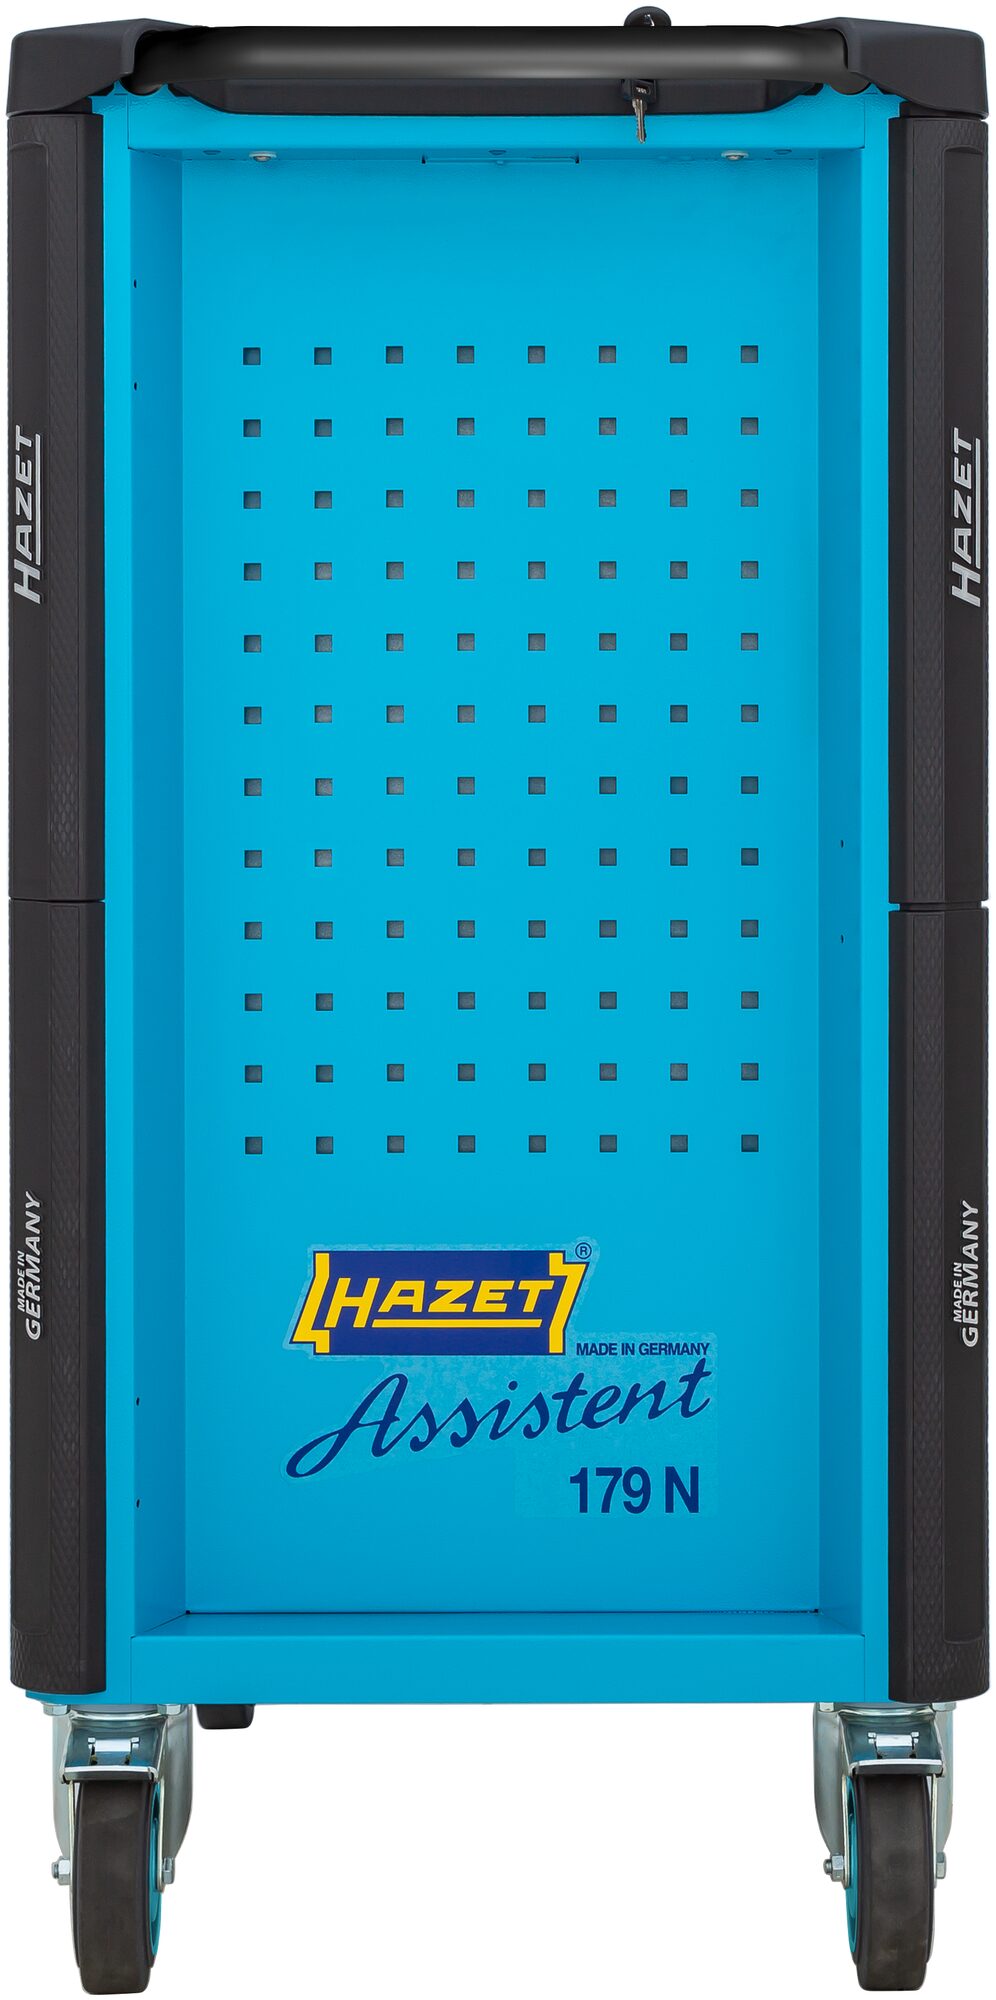 HAZET Werkstattwagen Assistent 179N-8-2700/296 · Werkzeuge: 296